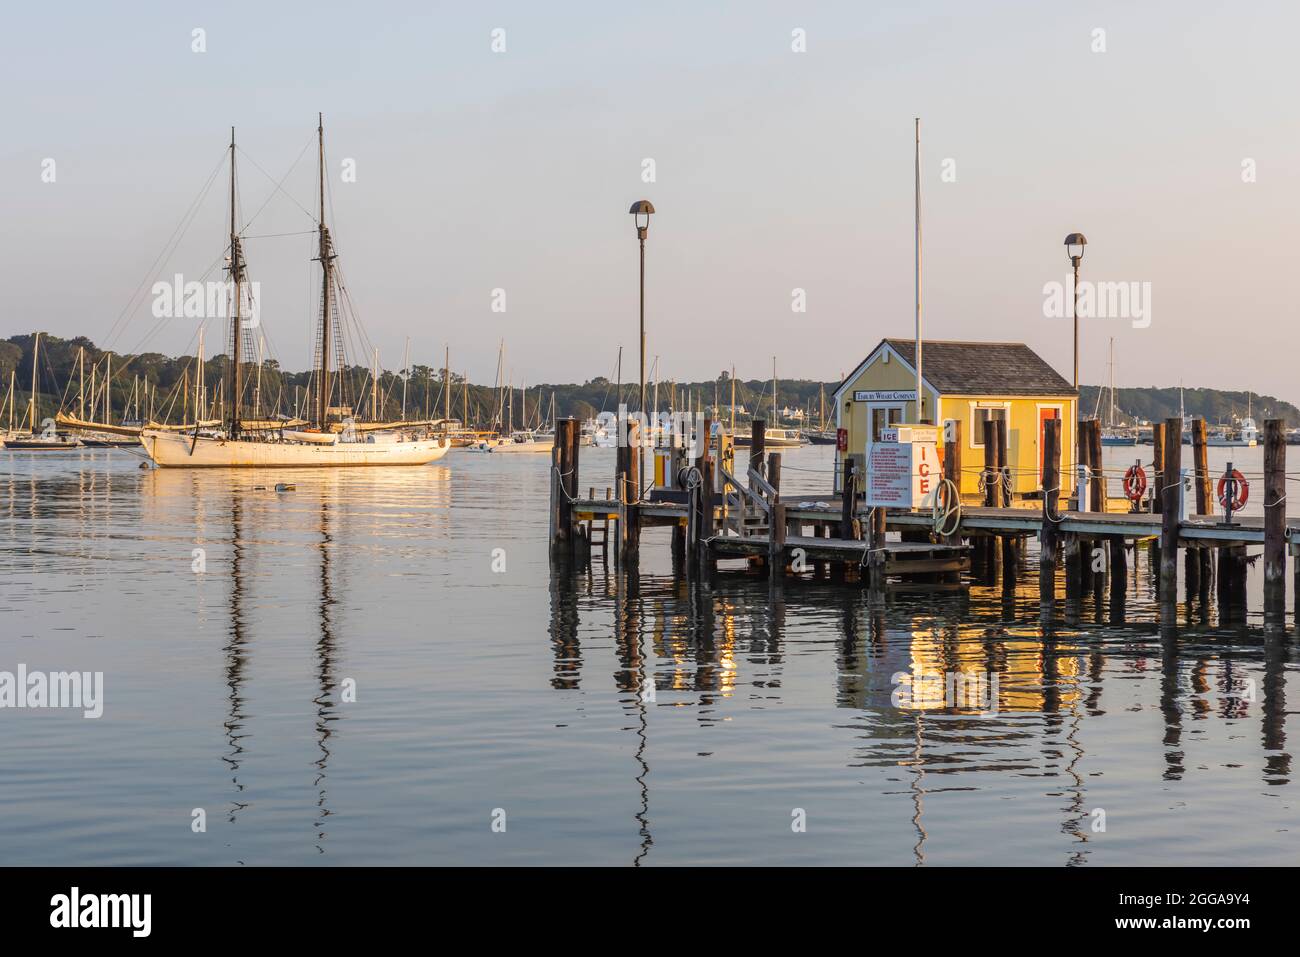 Tisbury Wharf en el puerto Vineyard Haven, en Tisbury, Massachusetts, en Martha's Vineyard, con una goleta de dos mástiles 'Alabama' amarrada cerca. Foto de stock